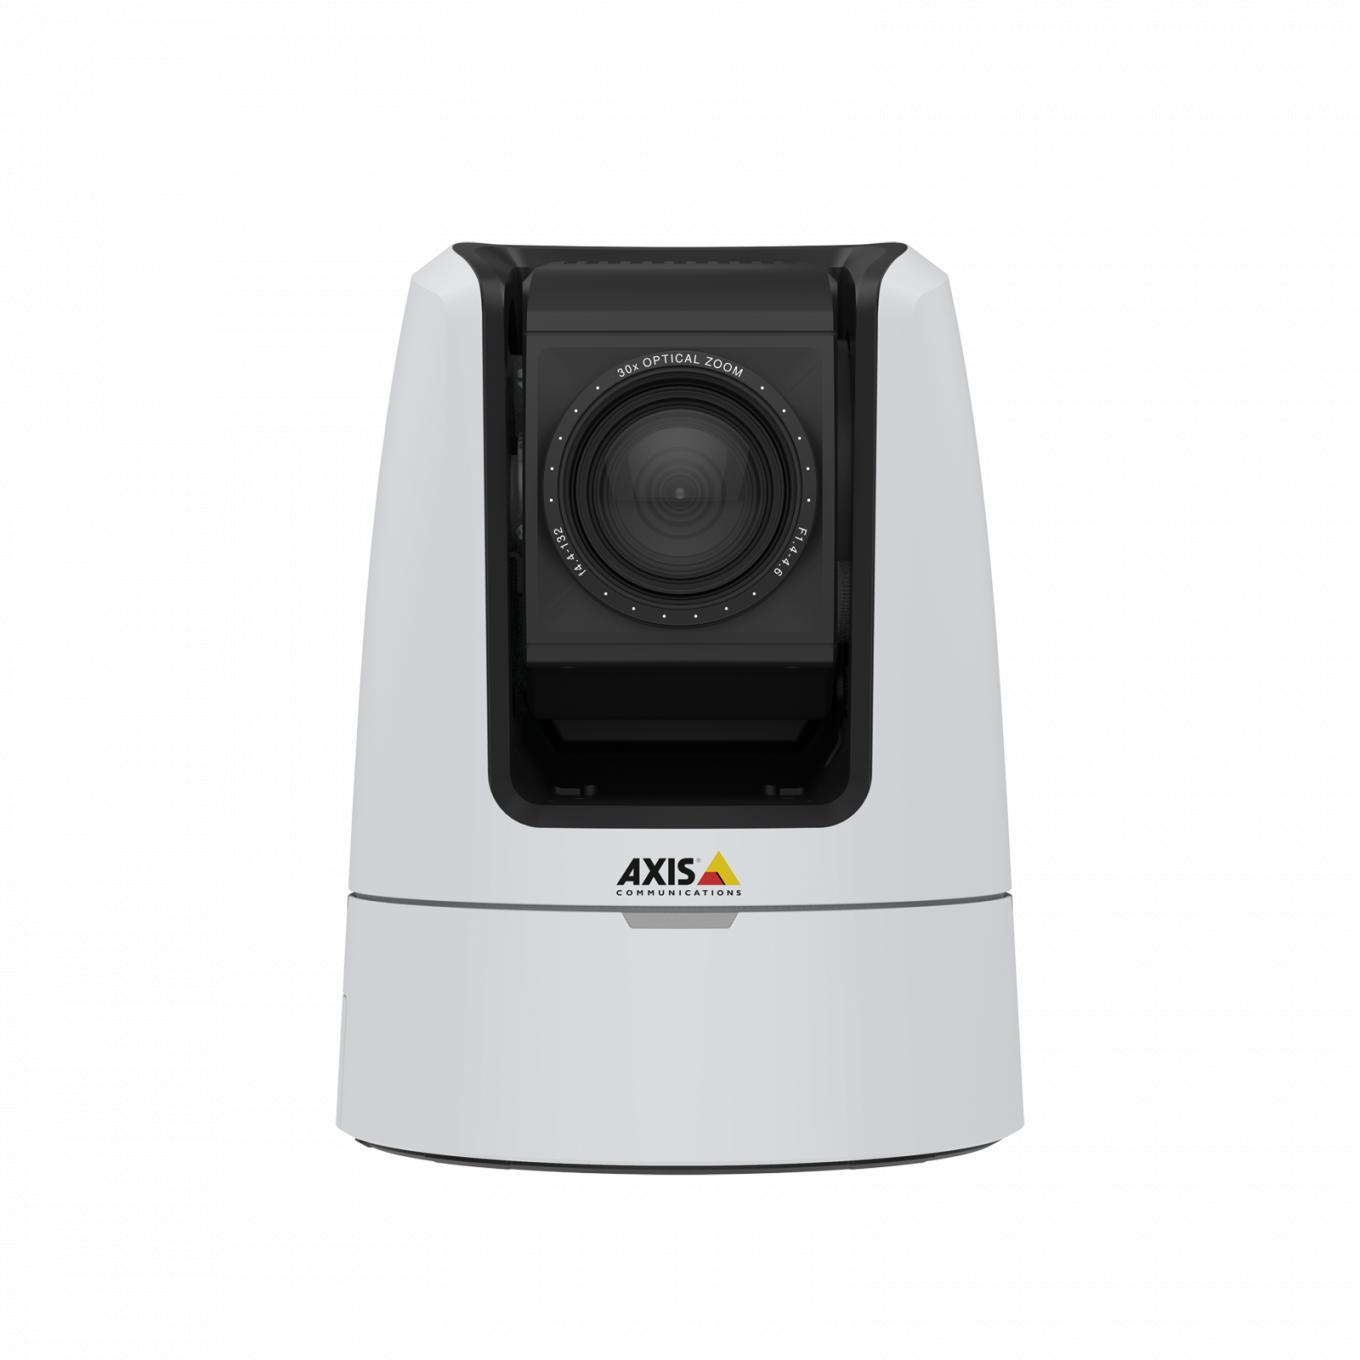 AXIS V5925 PTZ Network Camera ofrece audio de calidad de estudio con entradas XLR